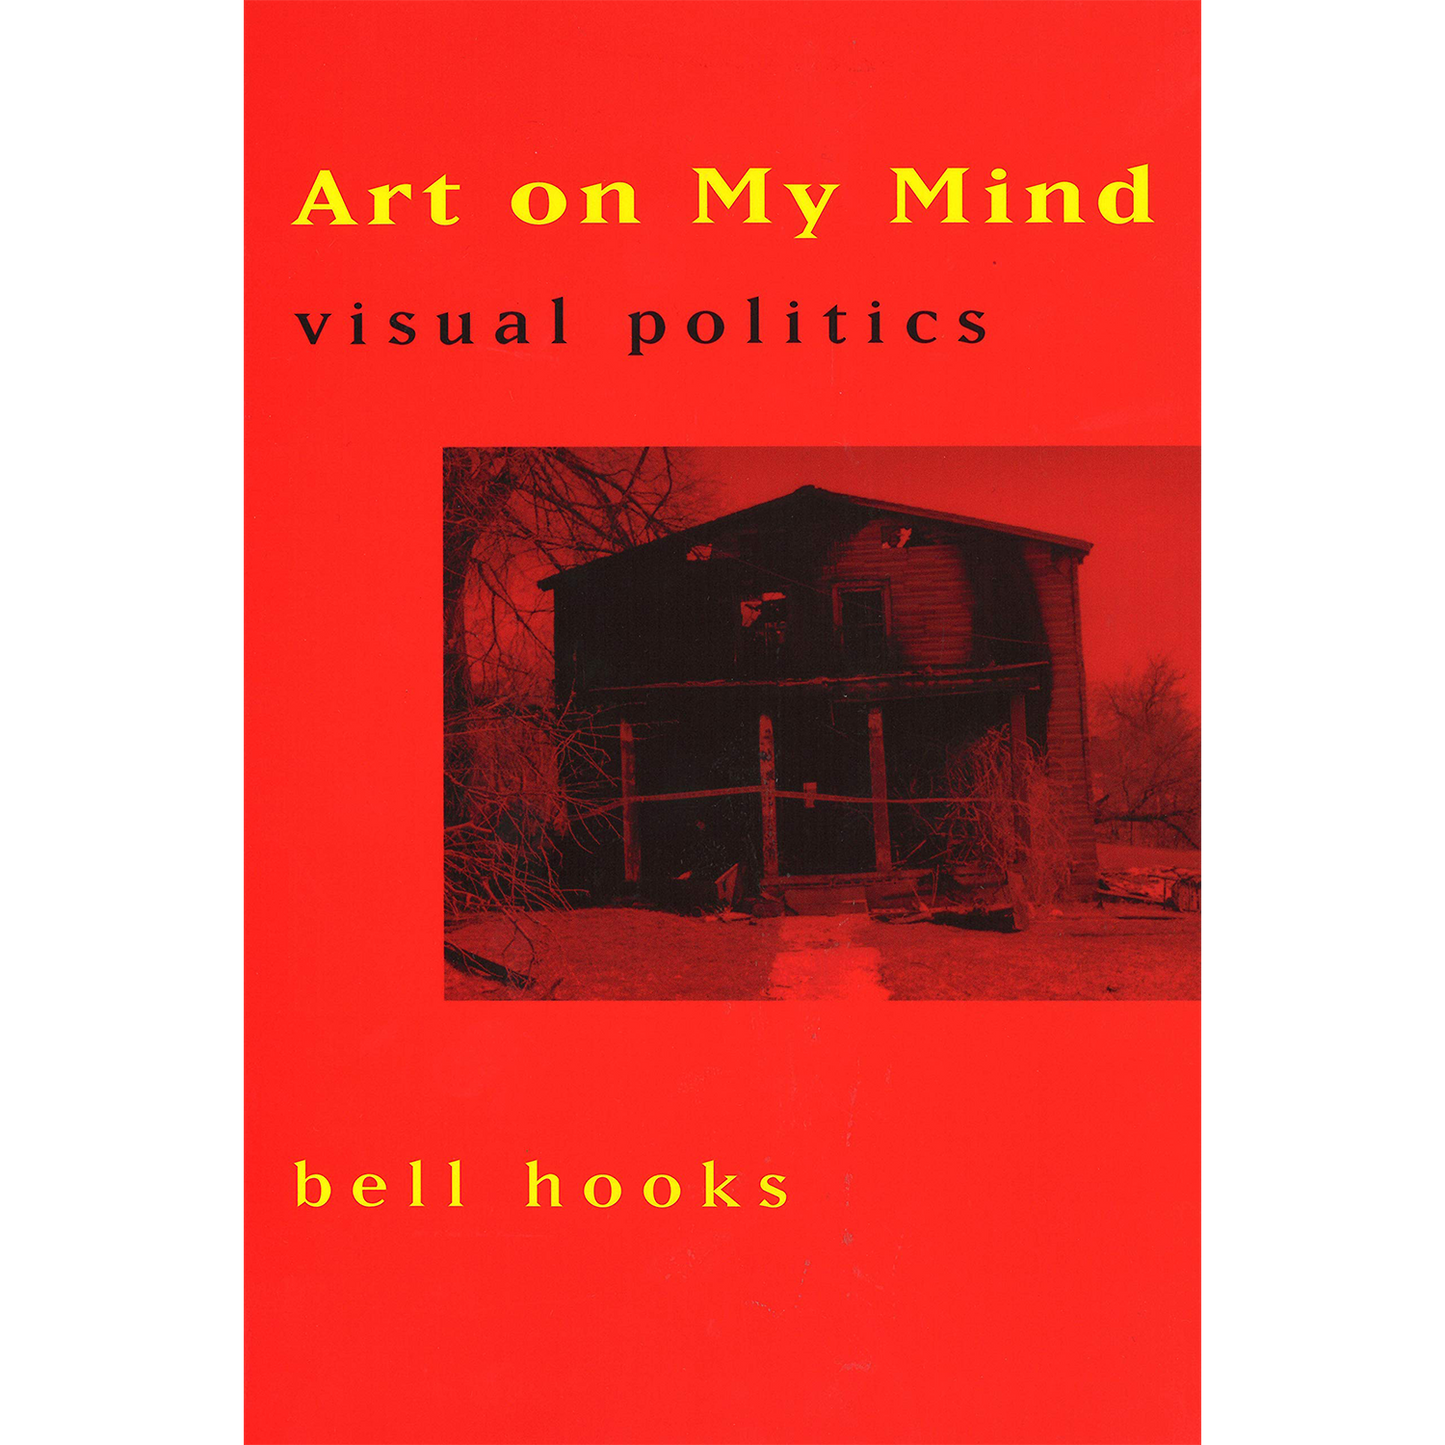 Art on My Mind: Visual Politics